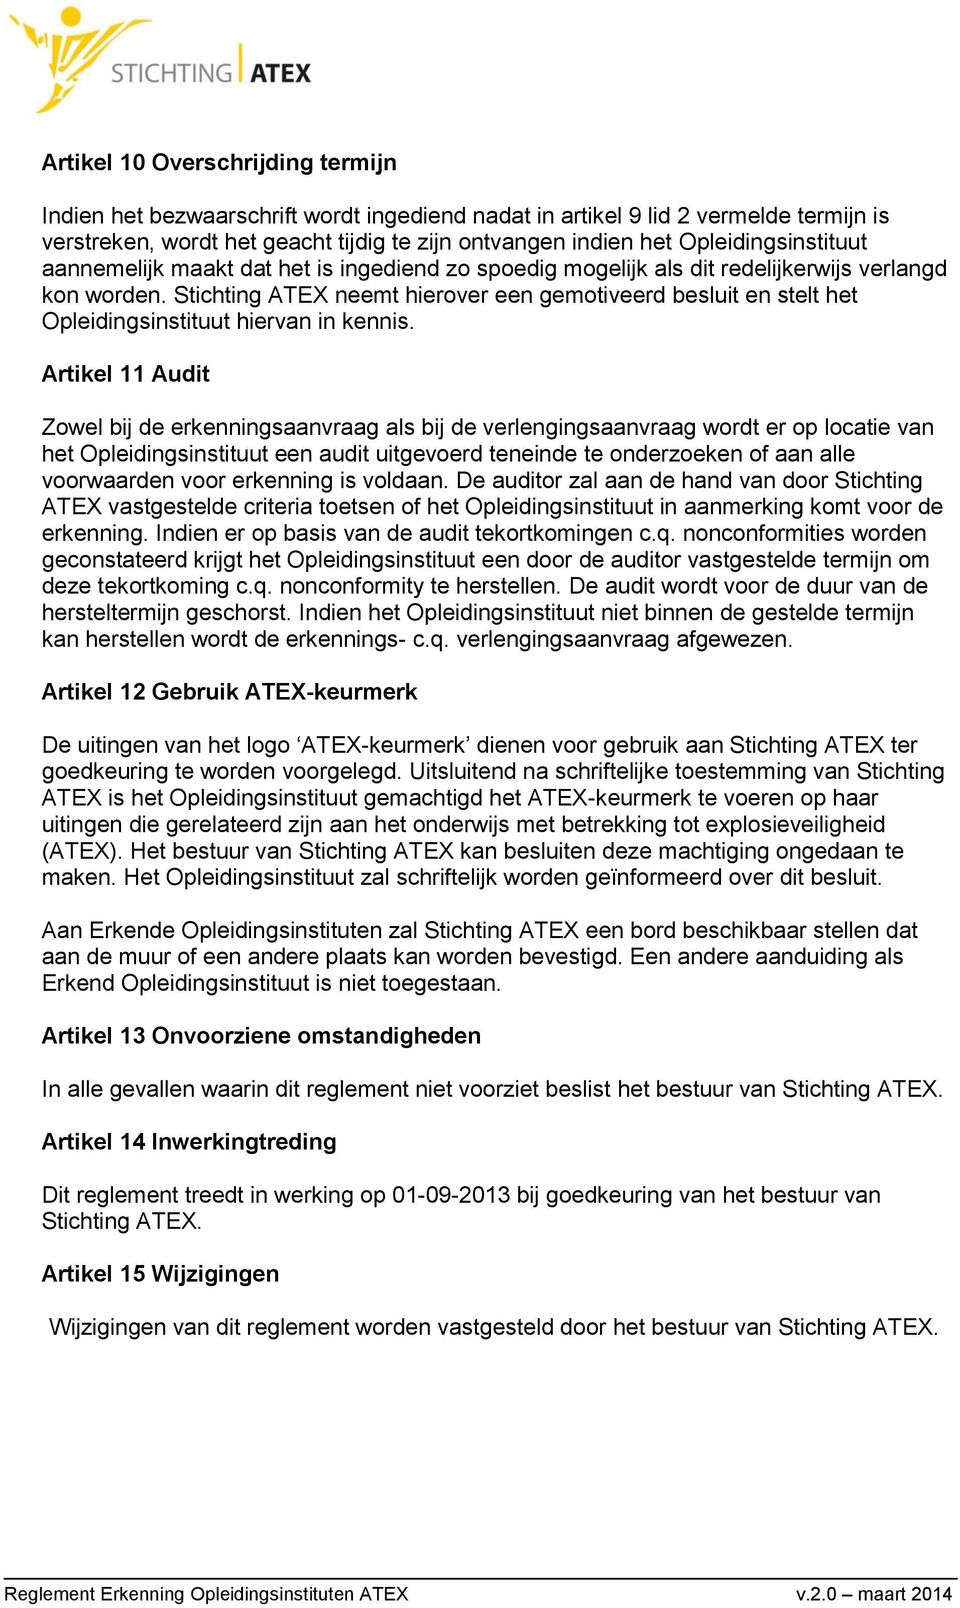 Stichting ATEX neemt hierover een gemotiveerd besluit en stelt het Opleidingsinstituut hiervan in kennis.